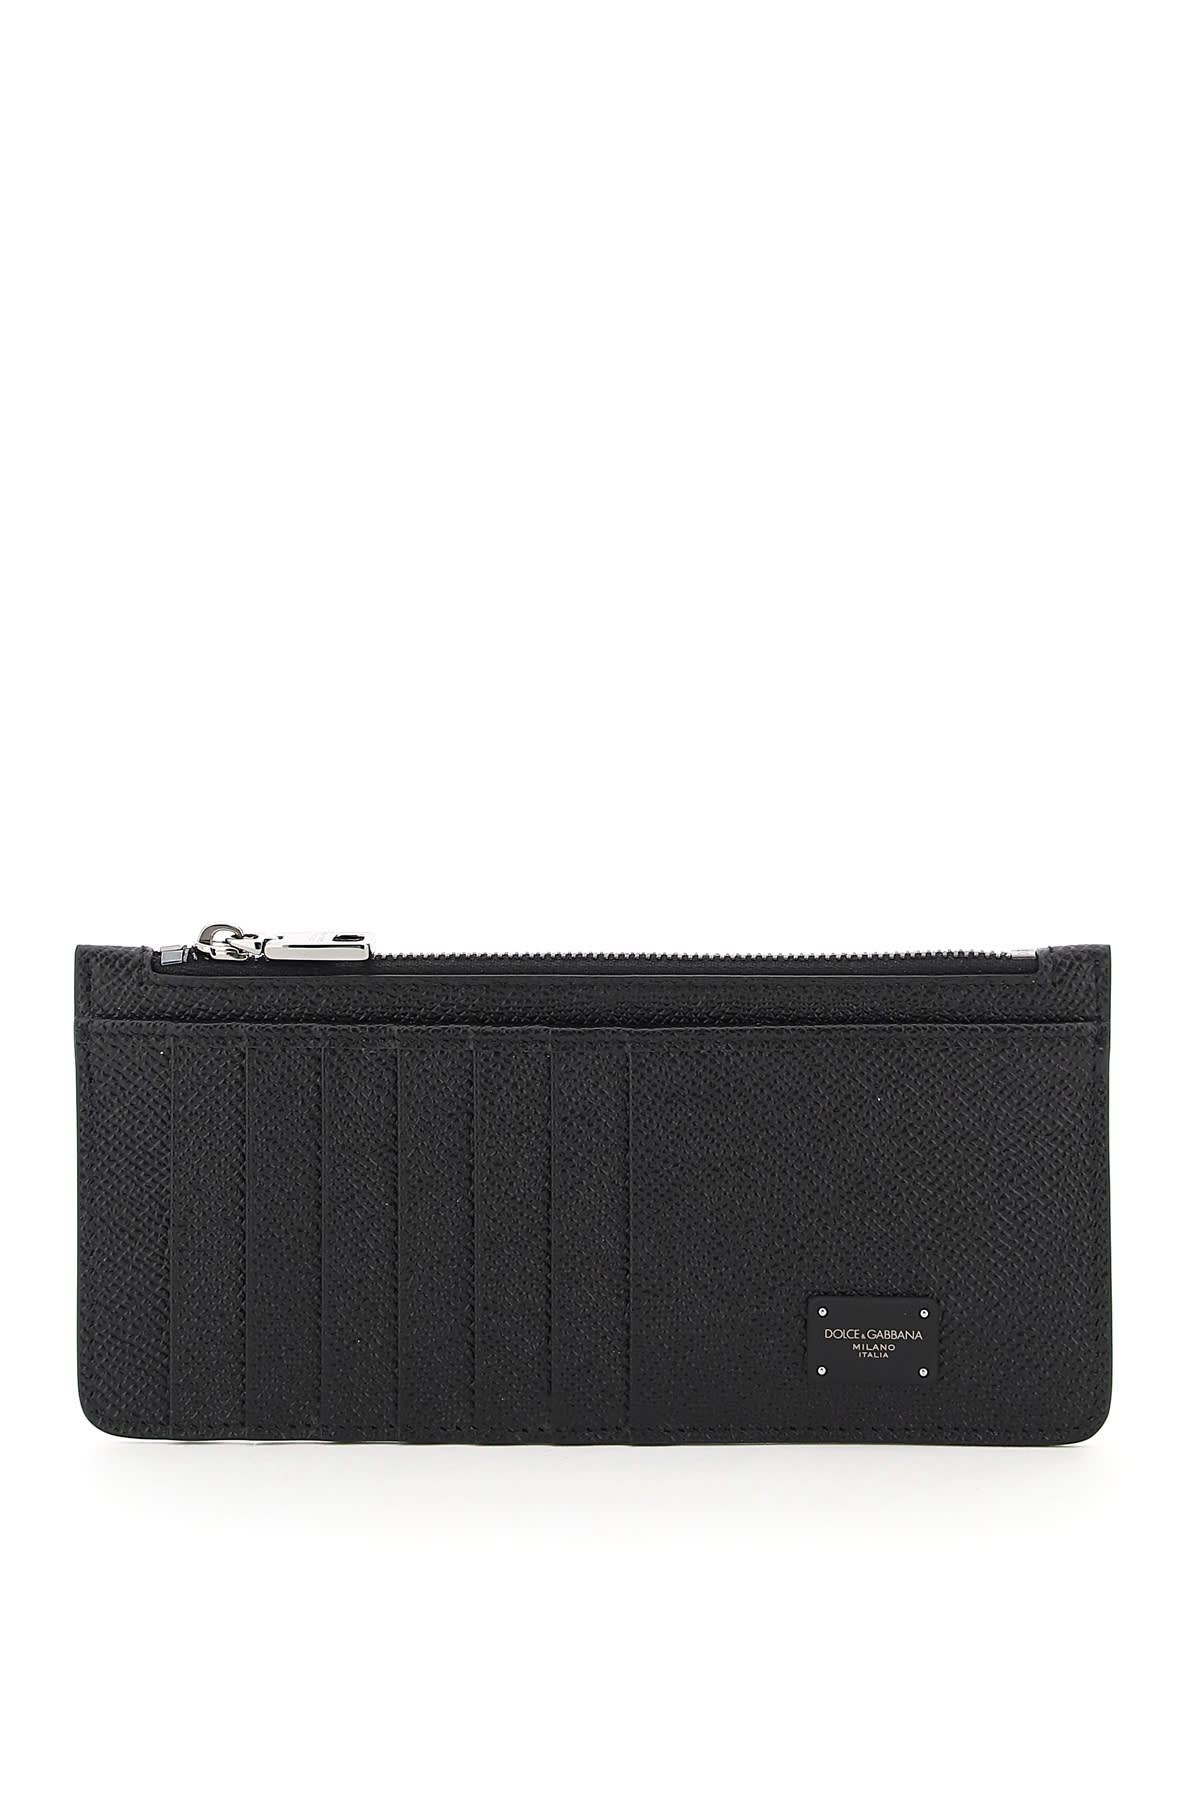 Dolce & Gabbana Multi Pockets Cardholder In Nero